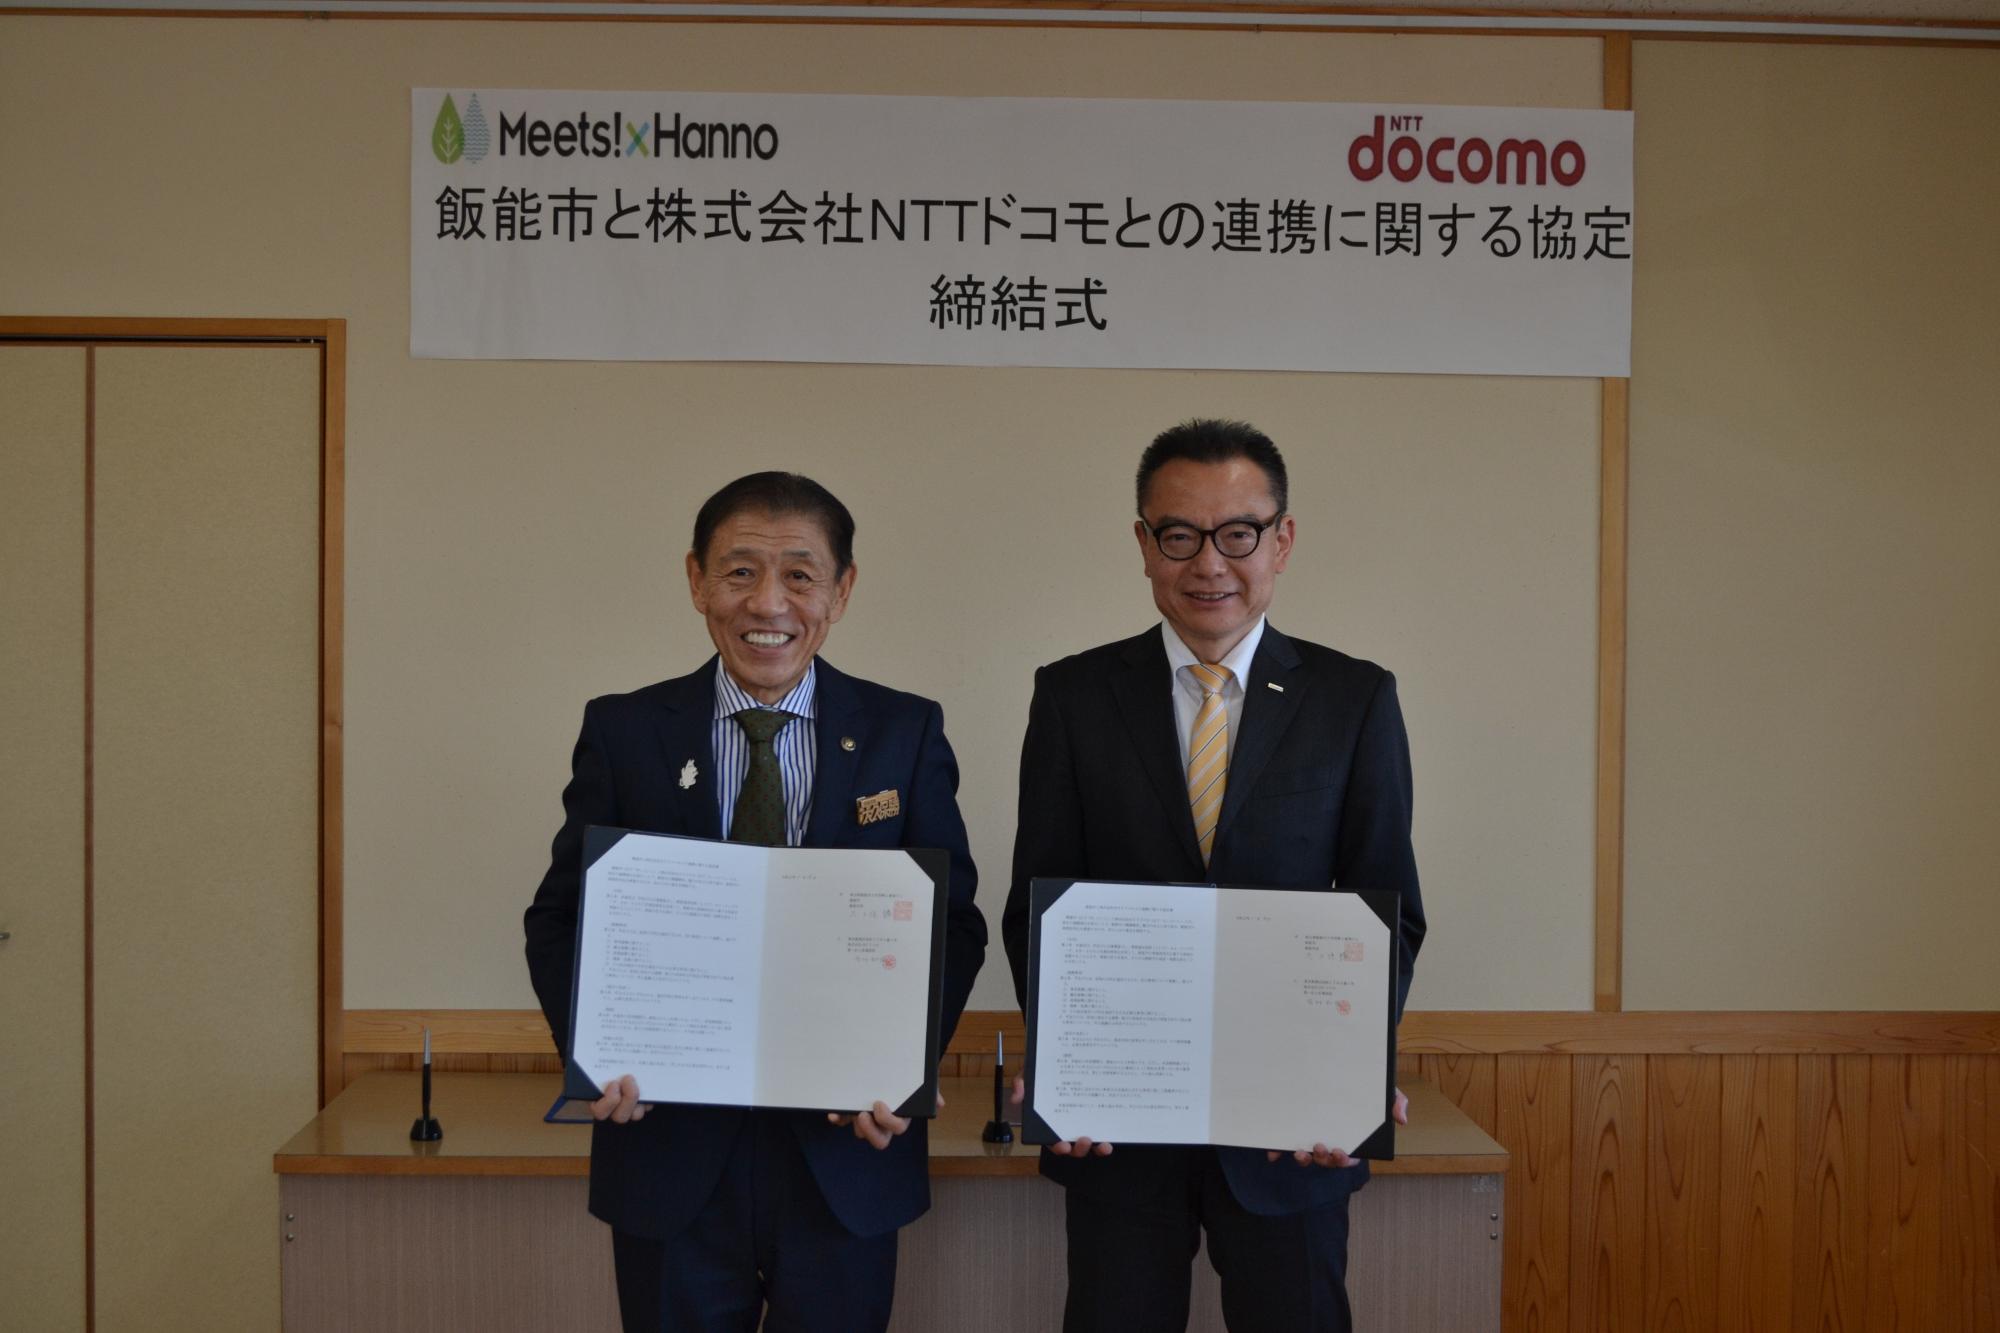 締結式で連携協定書を手に持って並んでいる市長とNTTドコモ埼玉支店長の写真